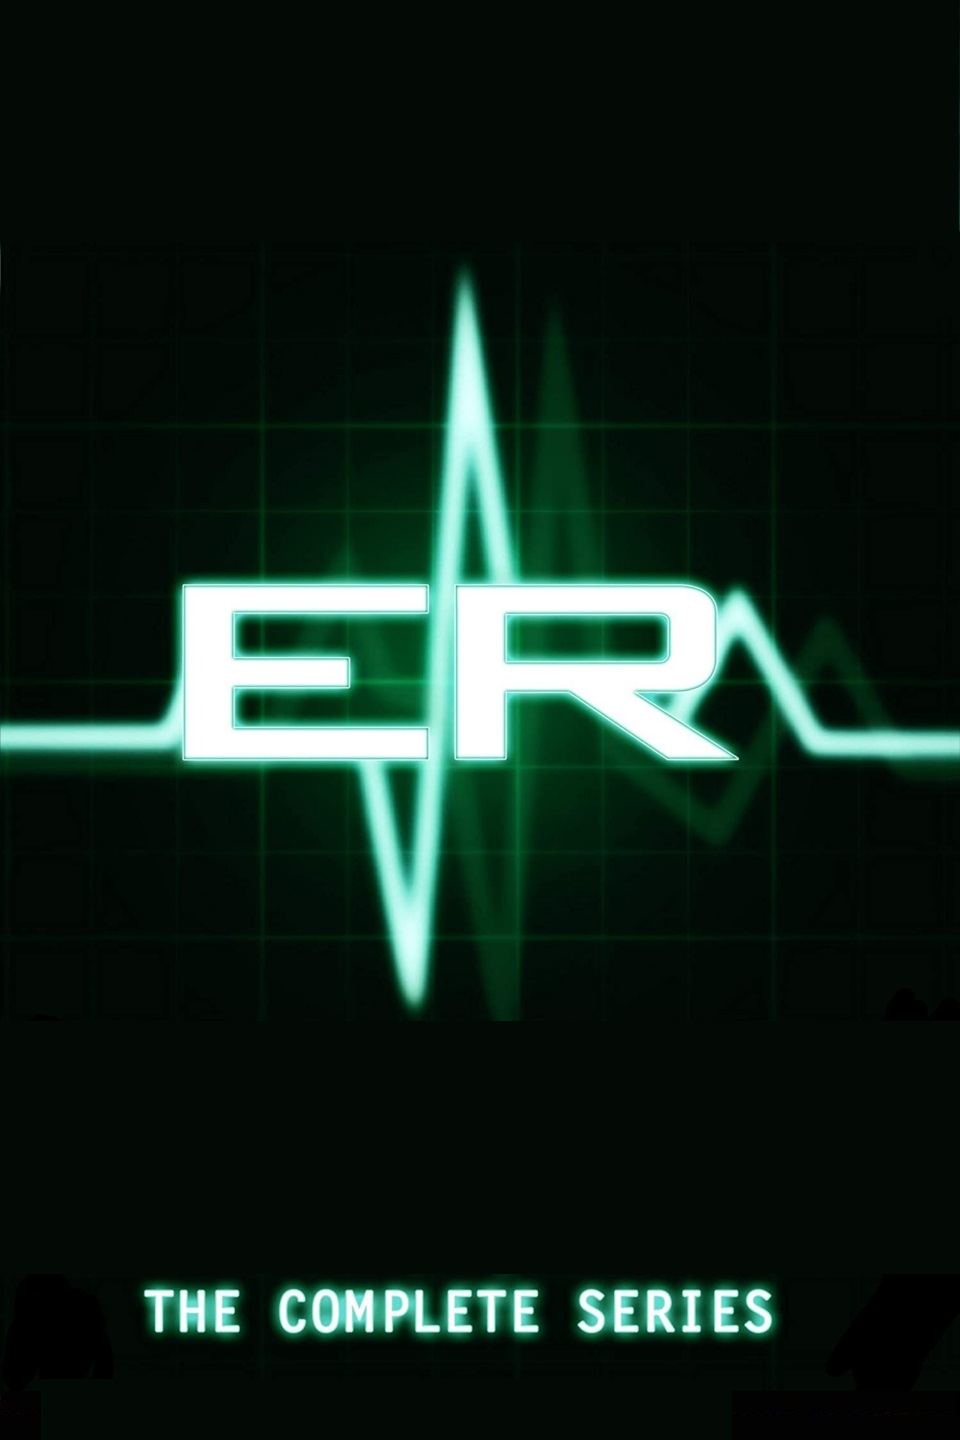 E.R. Medici in prima linea